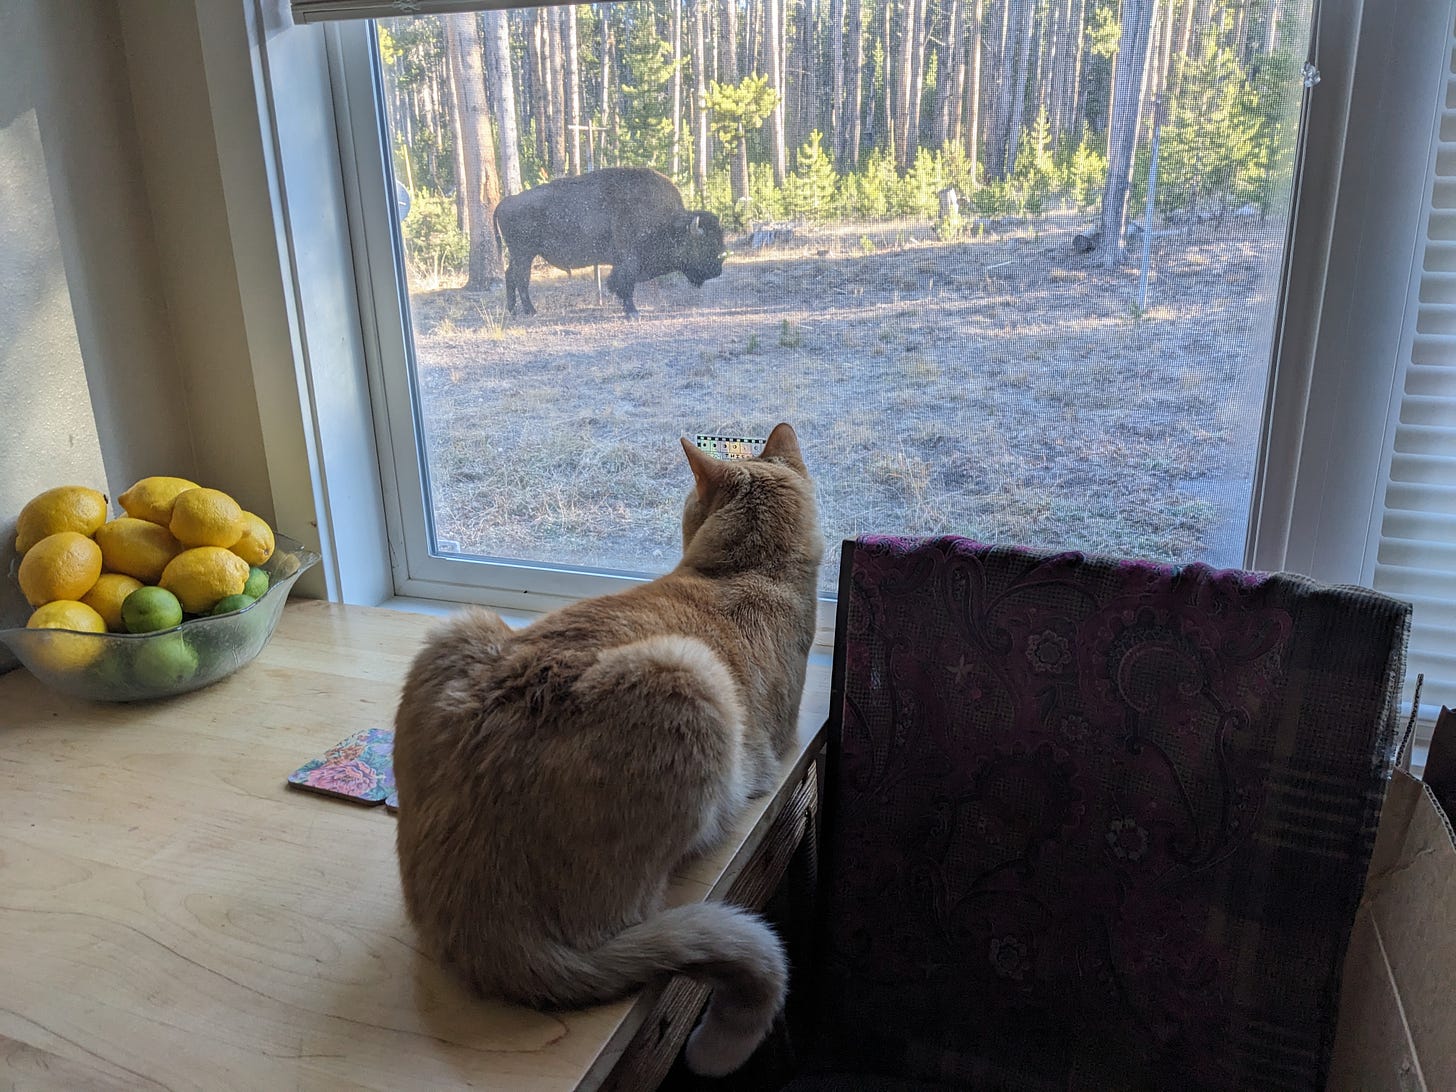 the orange cat observes a bison 